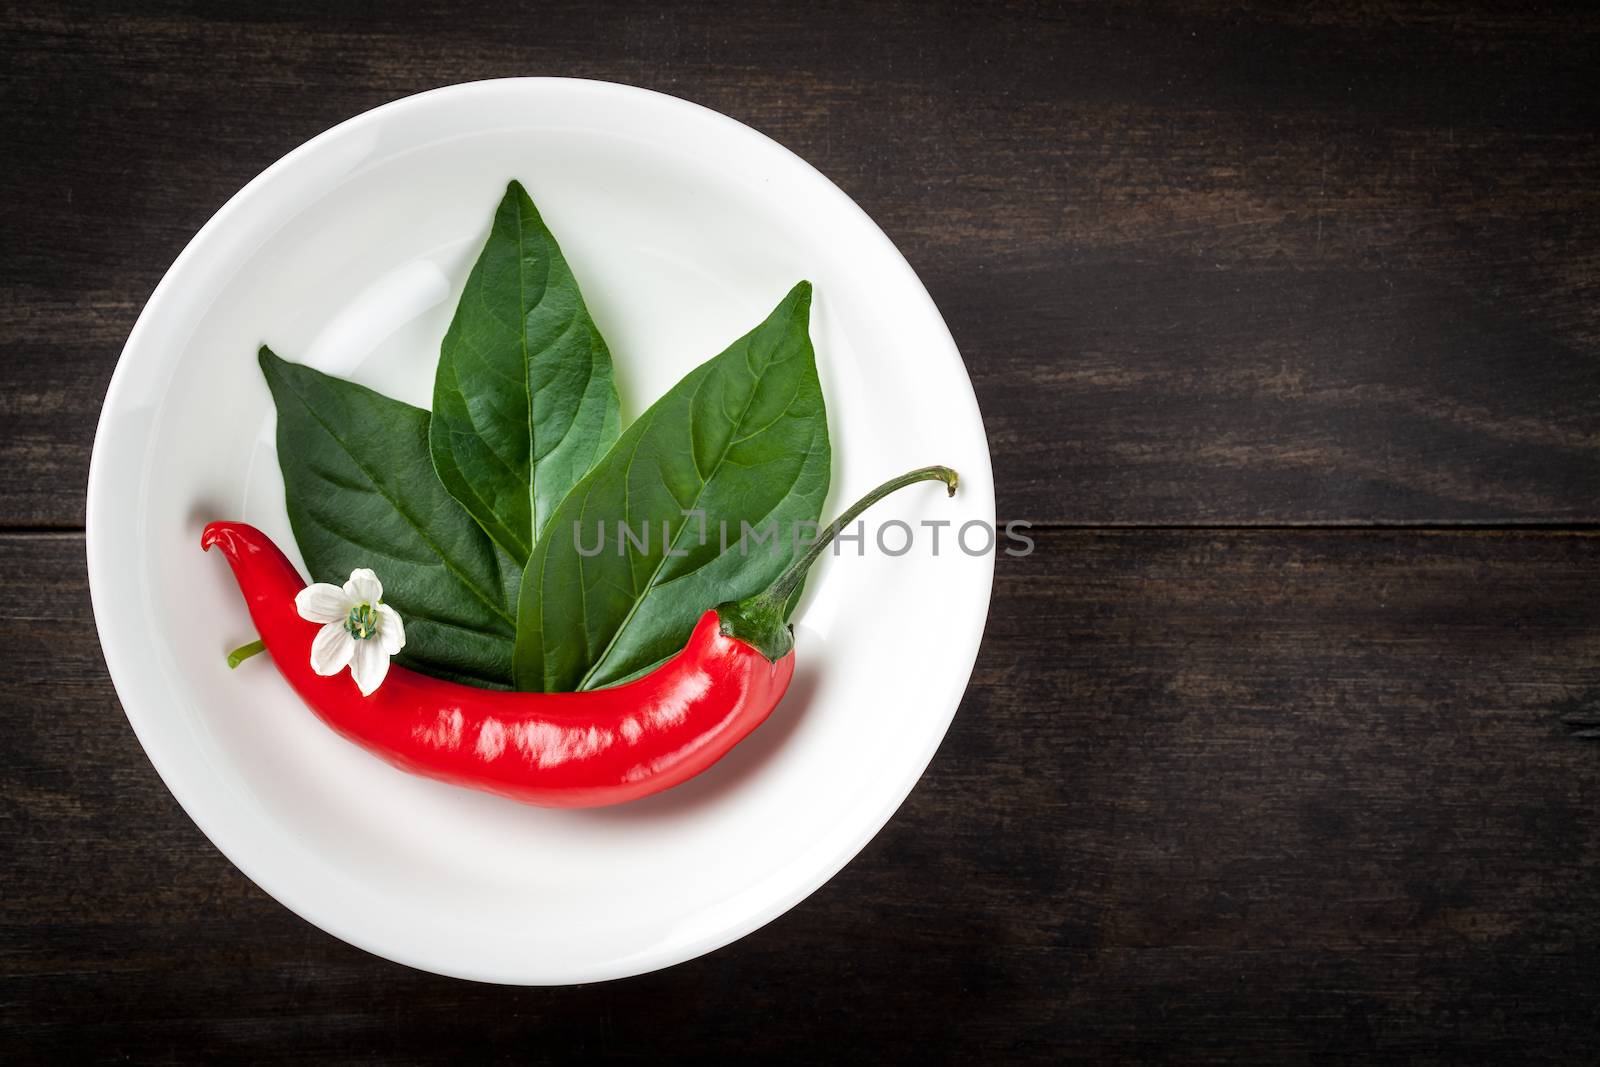 Chili Pepper by bozena_fulawka